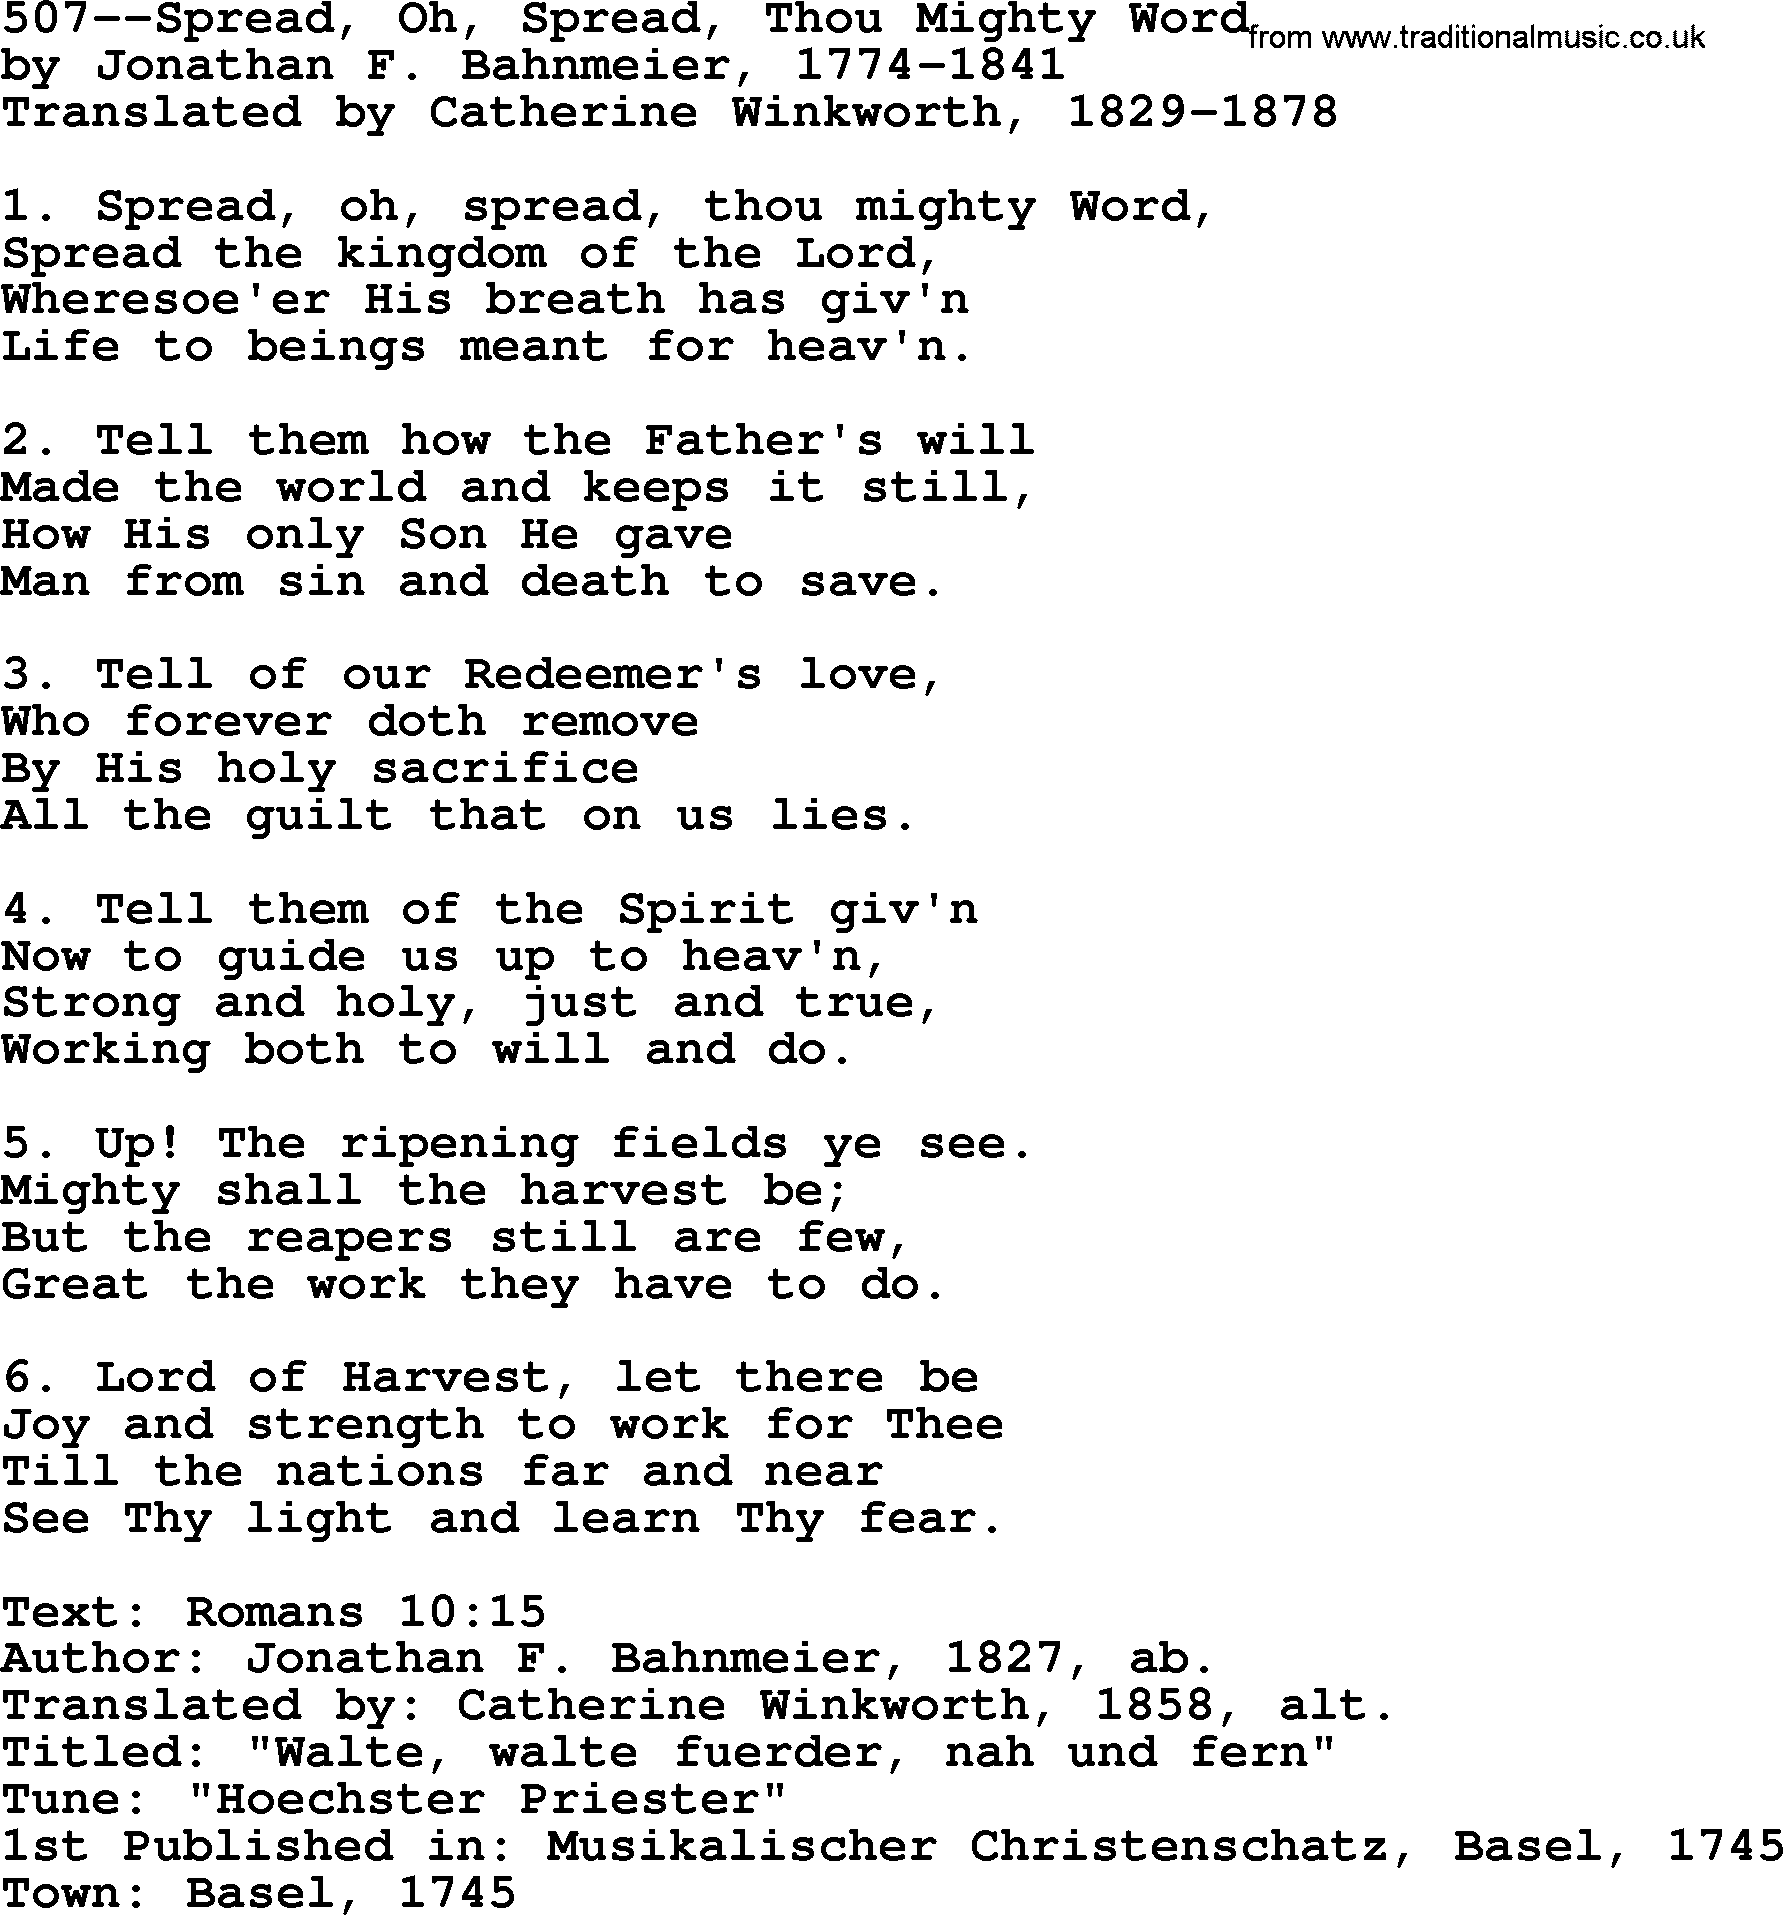 Lutheran Hymn: 507--Spread, Oh, Spread, Thou Mighty Word.txt lyrics with PDF